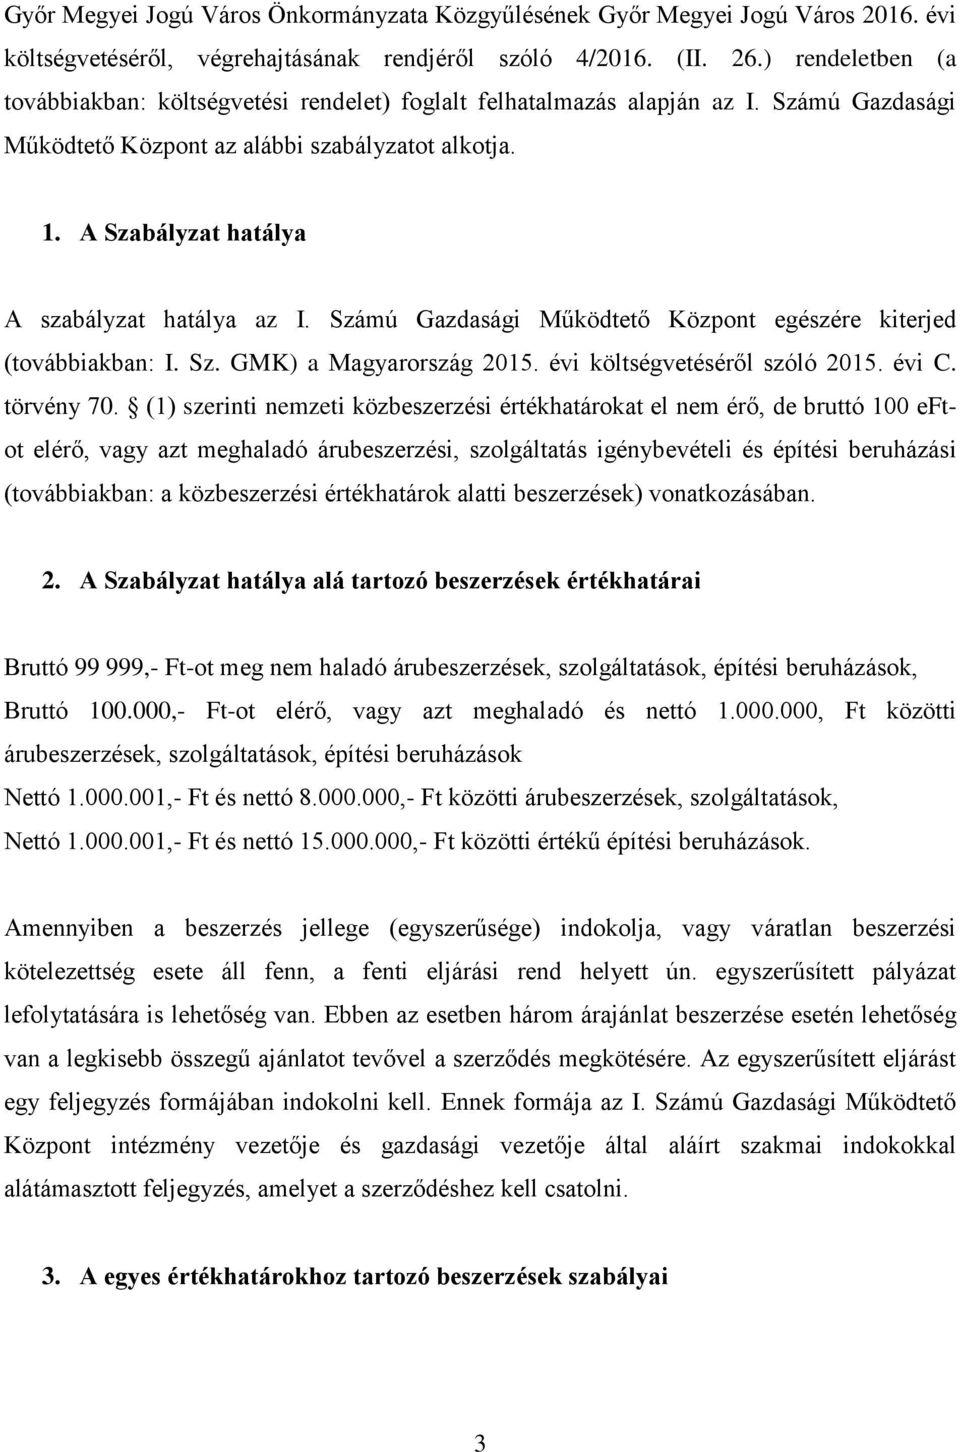 A Szabályzat hatálya A szabályzat hatálya az I. Számú Gazdasági Működtető Központ egészére kiterjed (továbbiakban: I. Sz. GMK) a Magyarország 2015. évi költségvetéséről szóló 2015. évi C. törvény 70.